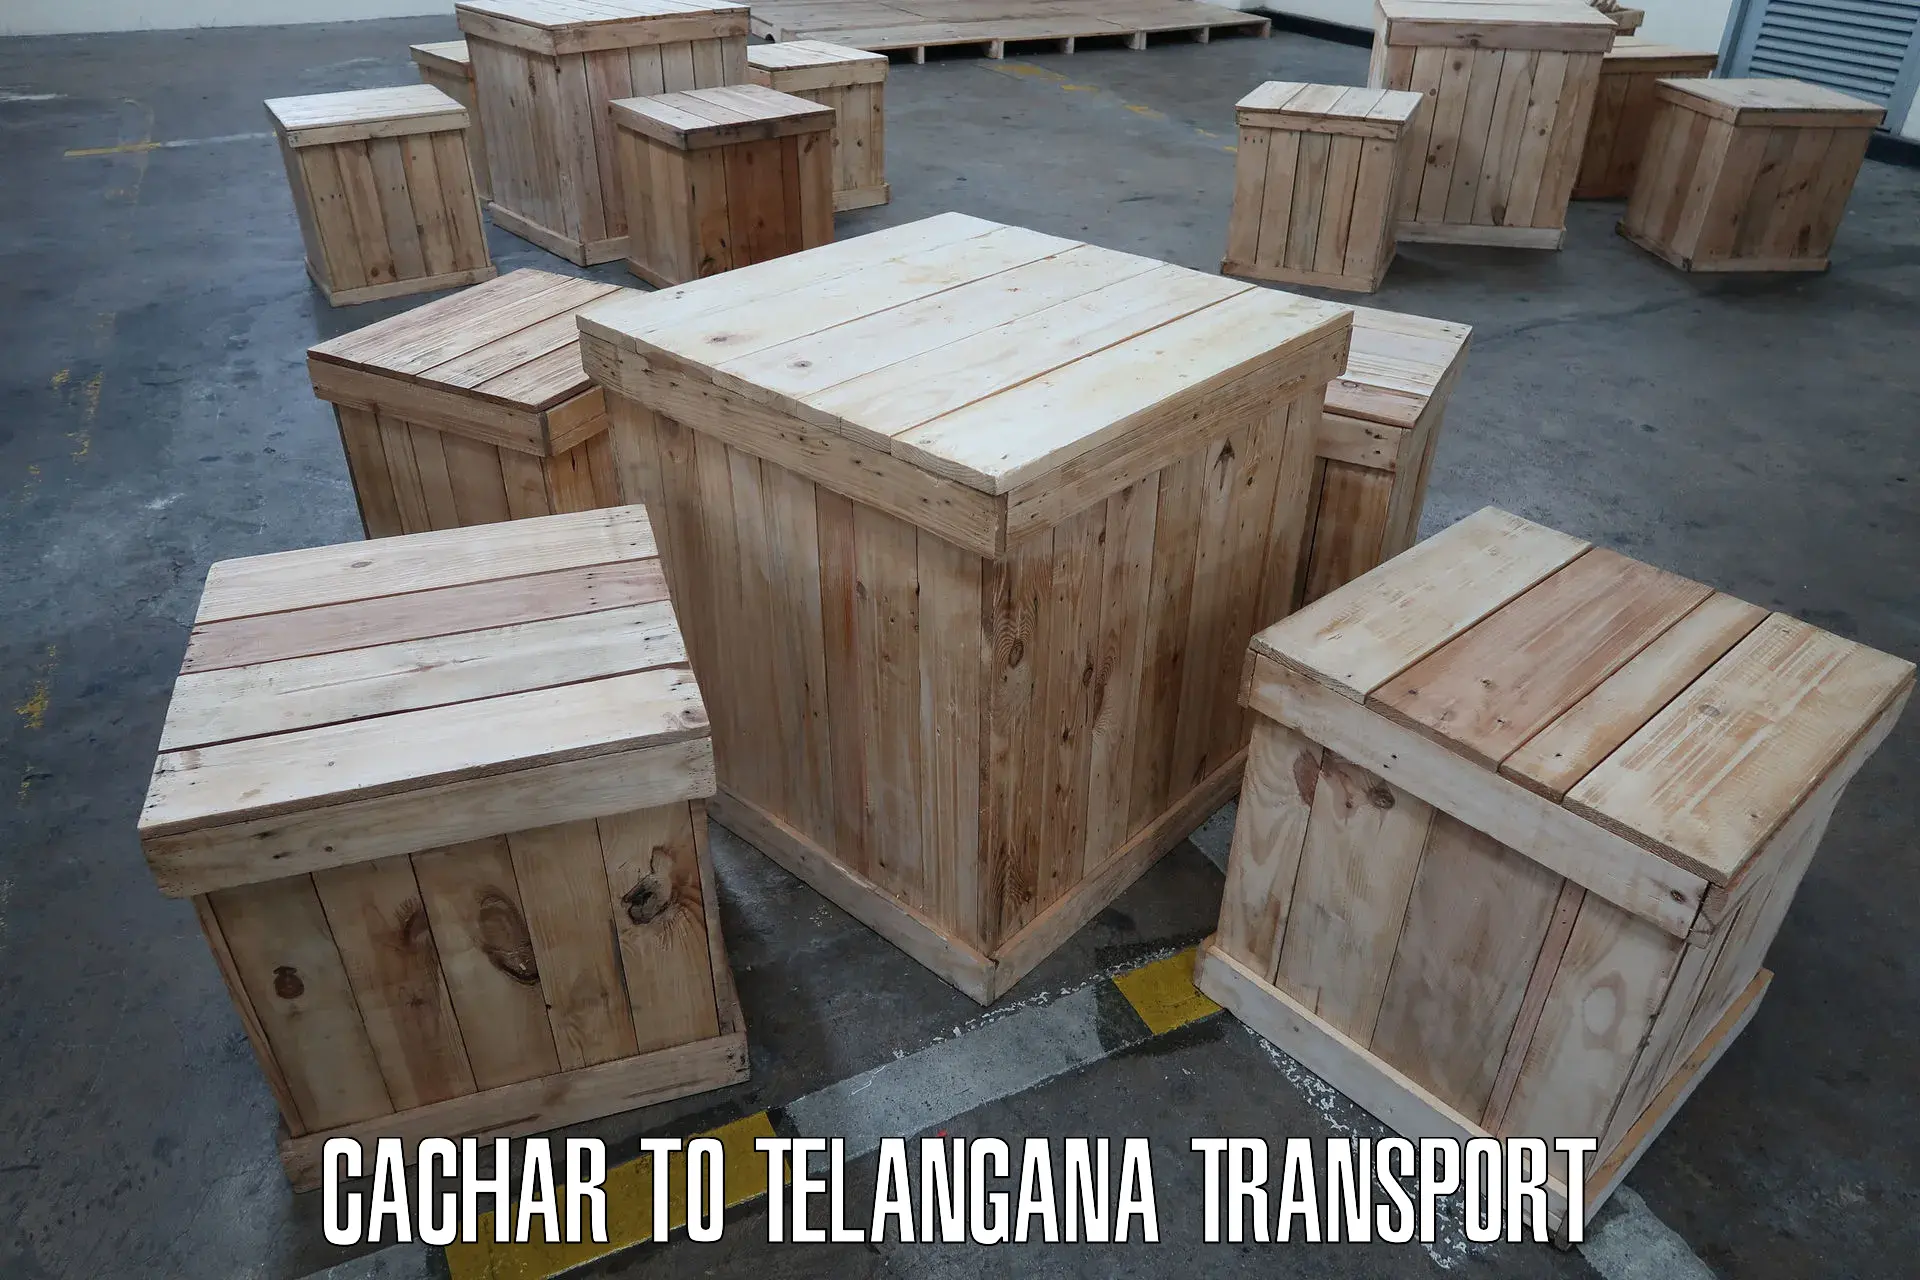 Transport in sharing Cachar to Sadashivpet